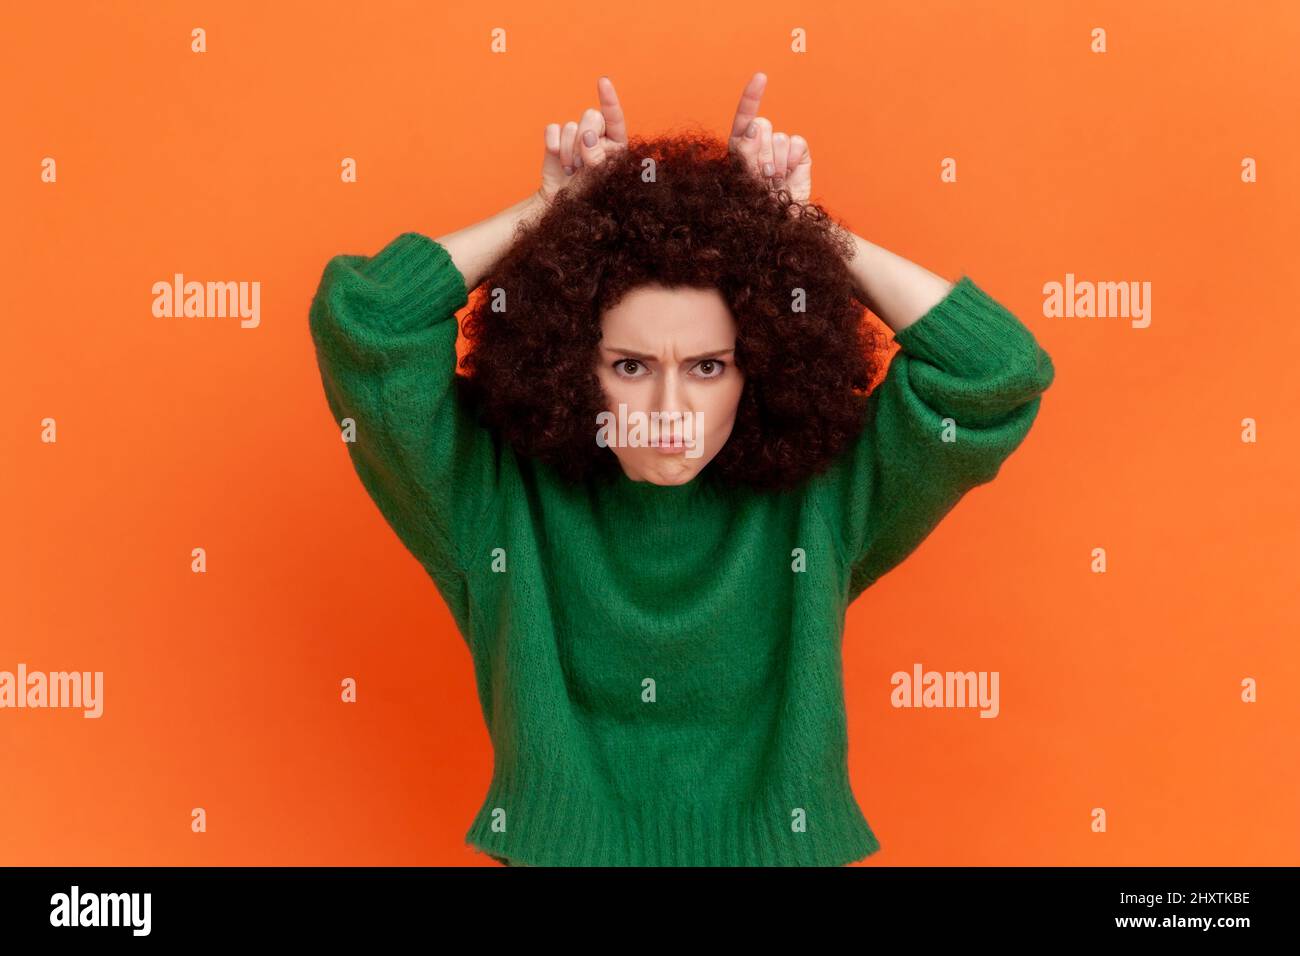 Frau mit Afro-Frisur trägt grünen Pullover sieht bedrohlich und zeigt Bullhorn Zeichen, hält die Finger auf dem Kopf, widerstreitende Person. Innenaufnahme des Studios isoliert auf orangefarbenem Hintergrund. Stockfoto